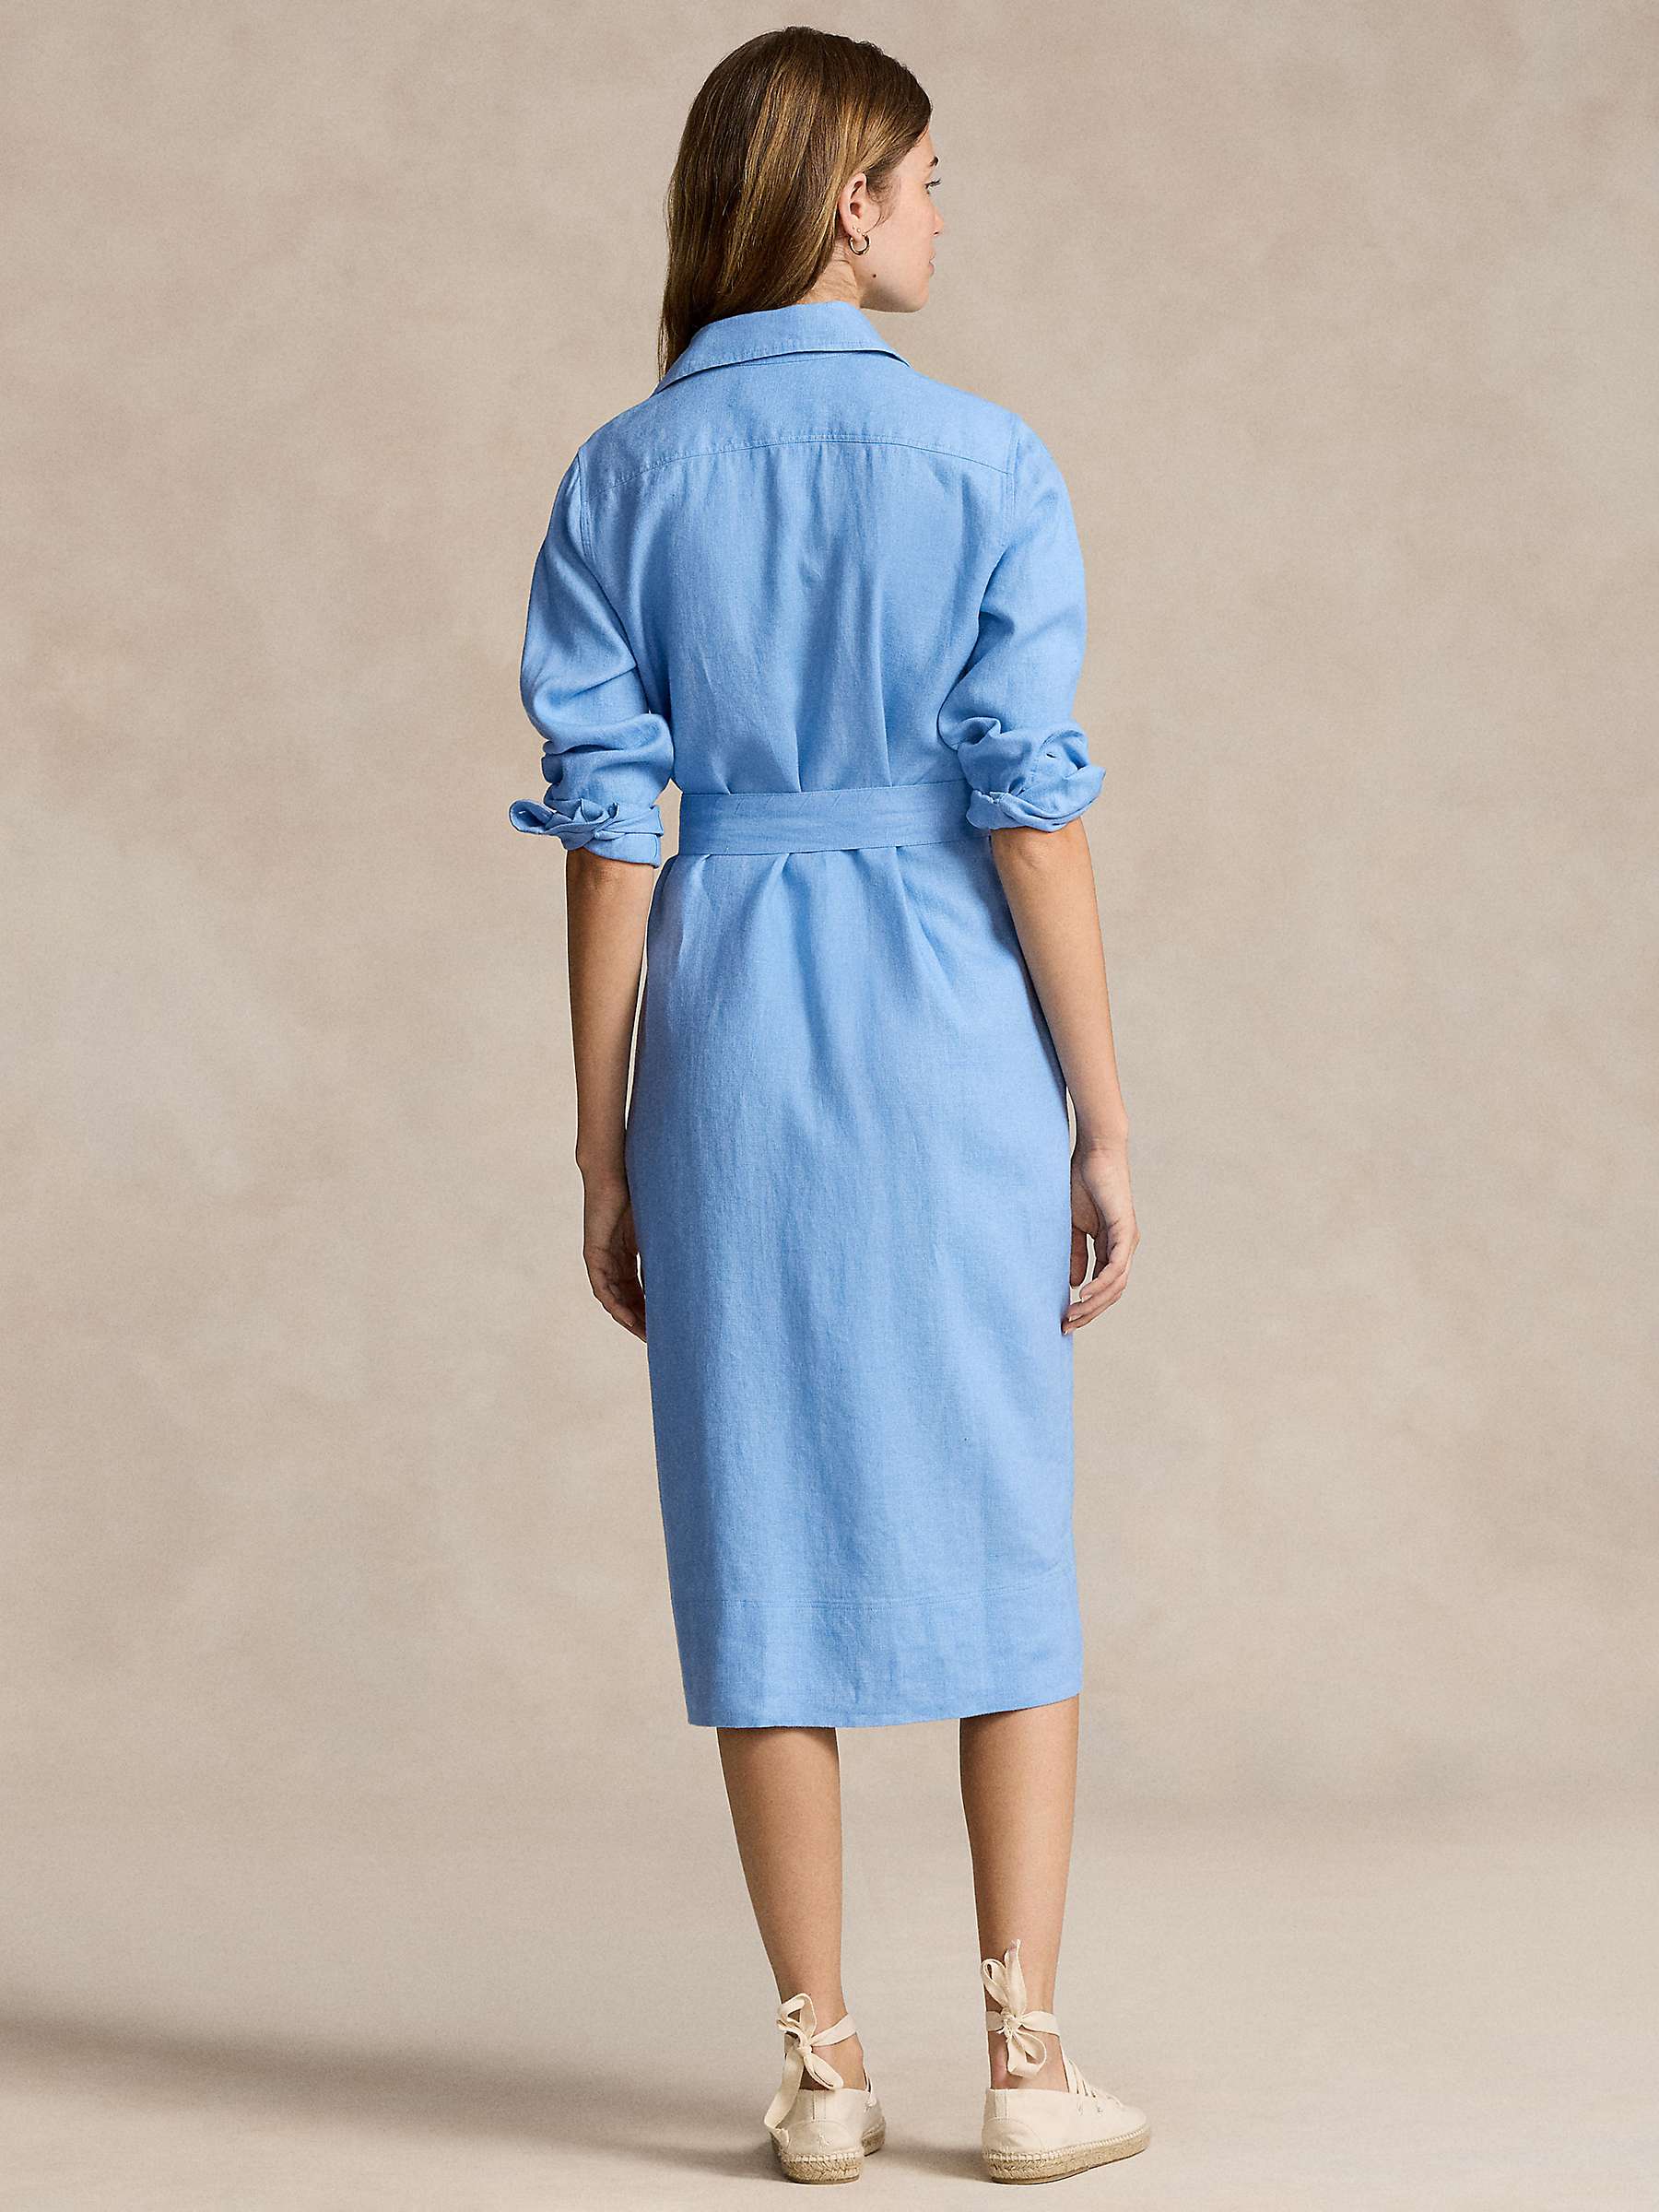 Buy Polo Ralph Lauren Linen Shirt Dress, Carolina Blue Online at johnlewis.com